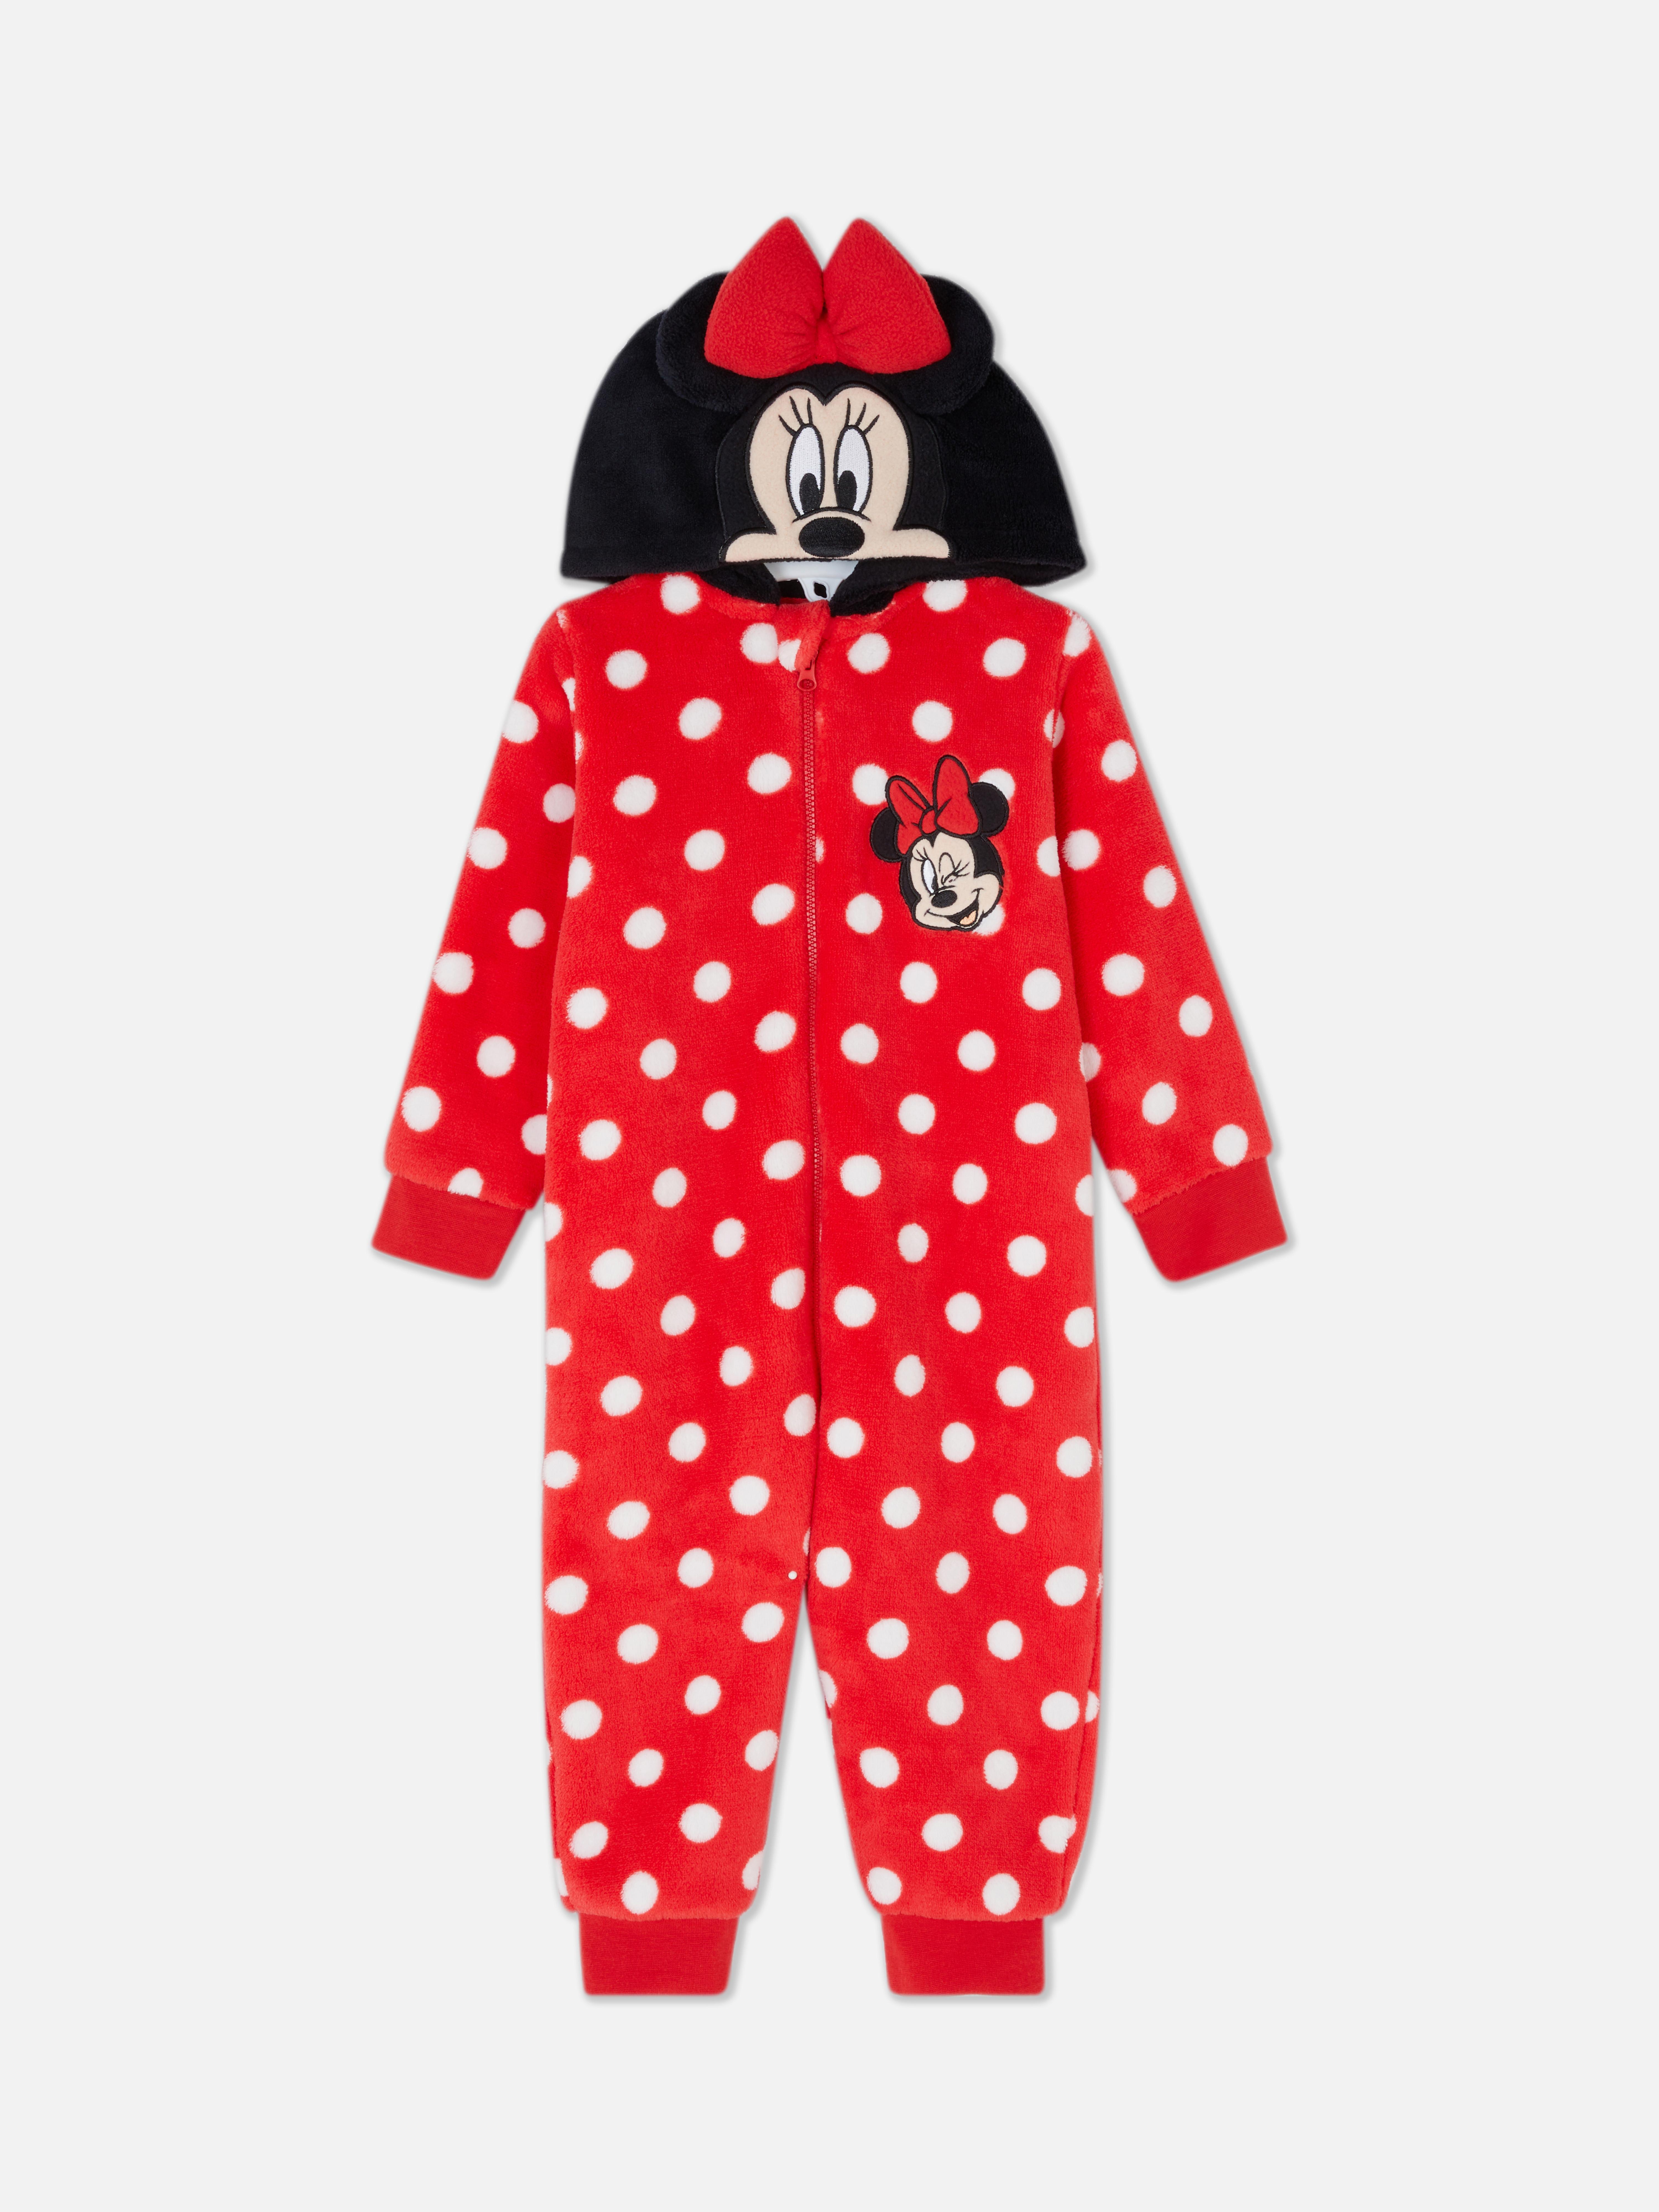 Mono de forro polar de Minnie Mouse de Disney | Básicos de moda para bebé | Moda para bebés y recién nacidos | Ropa para niños | los productos Primark | Primark España